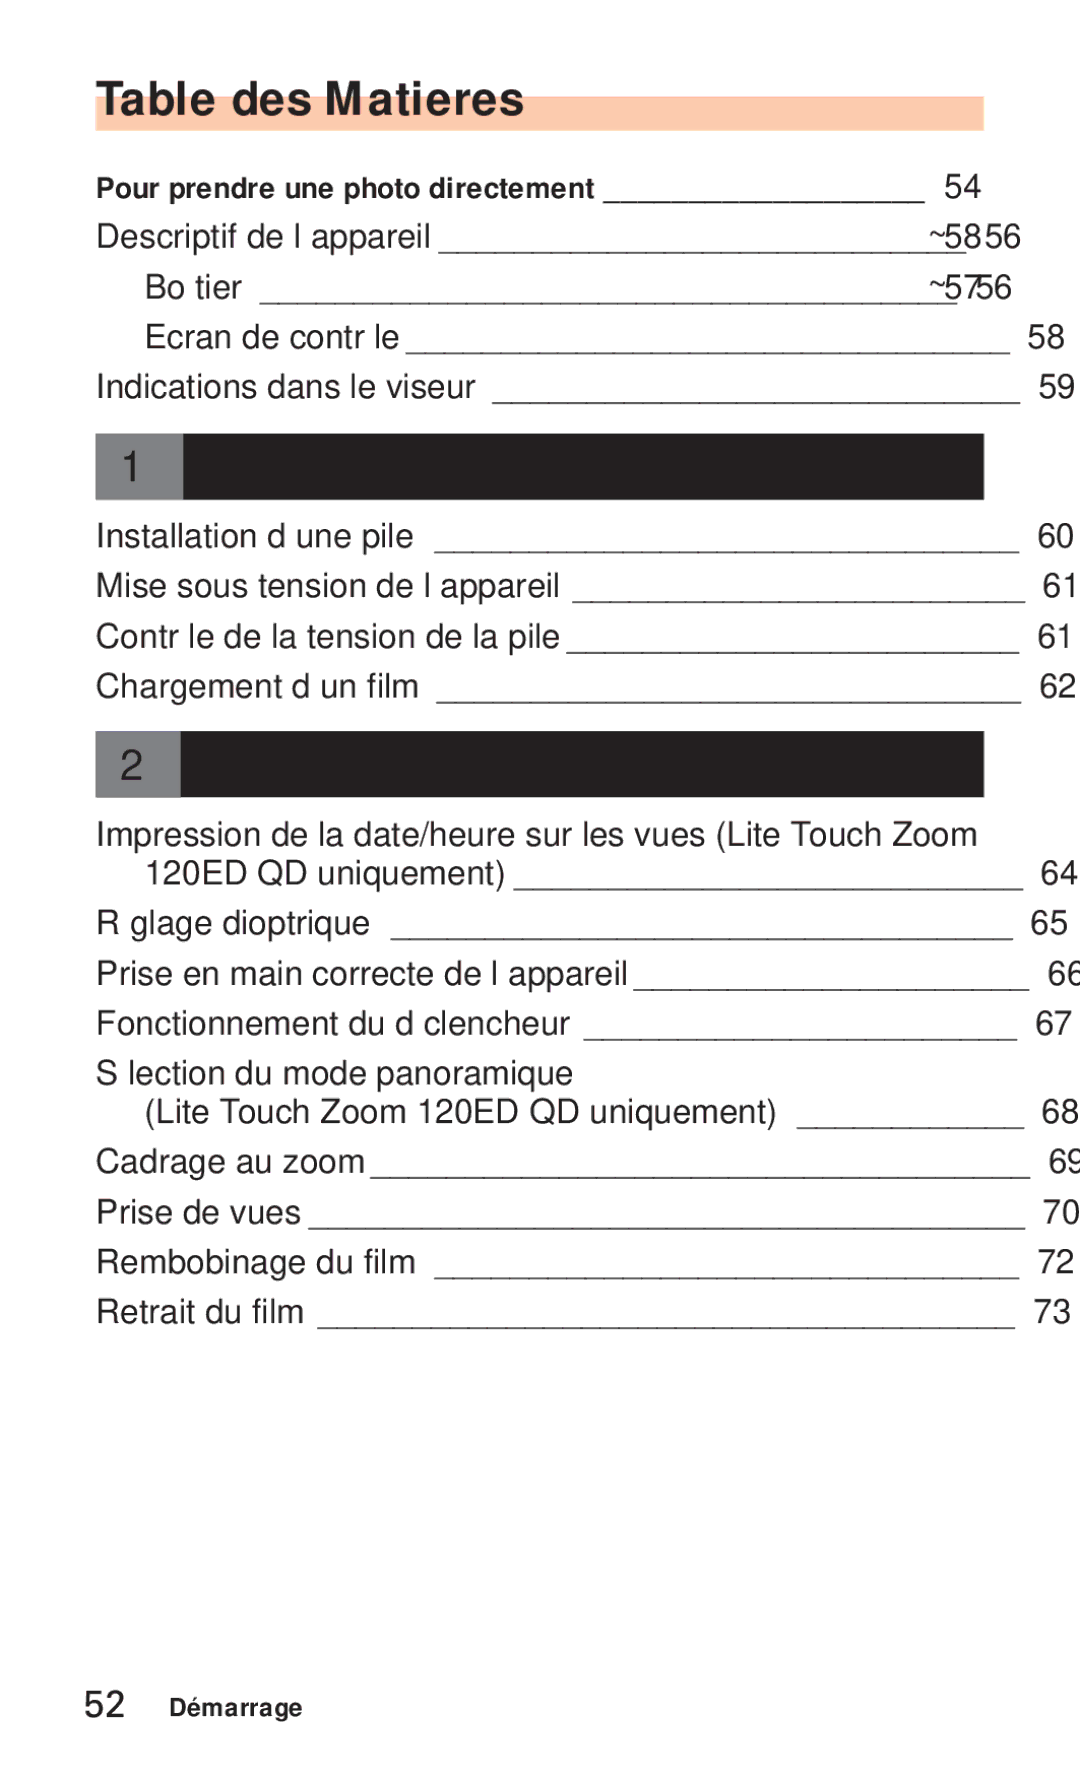 Nikon ED 120 instruction manual Table des Matieres, Préparation 